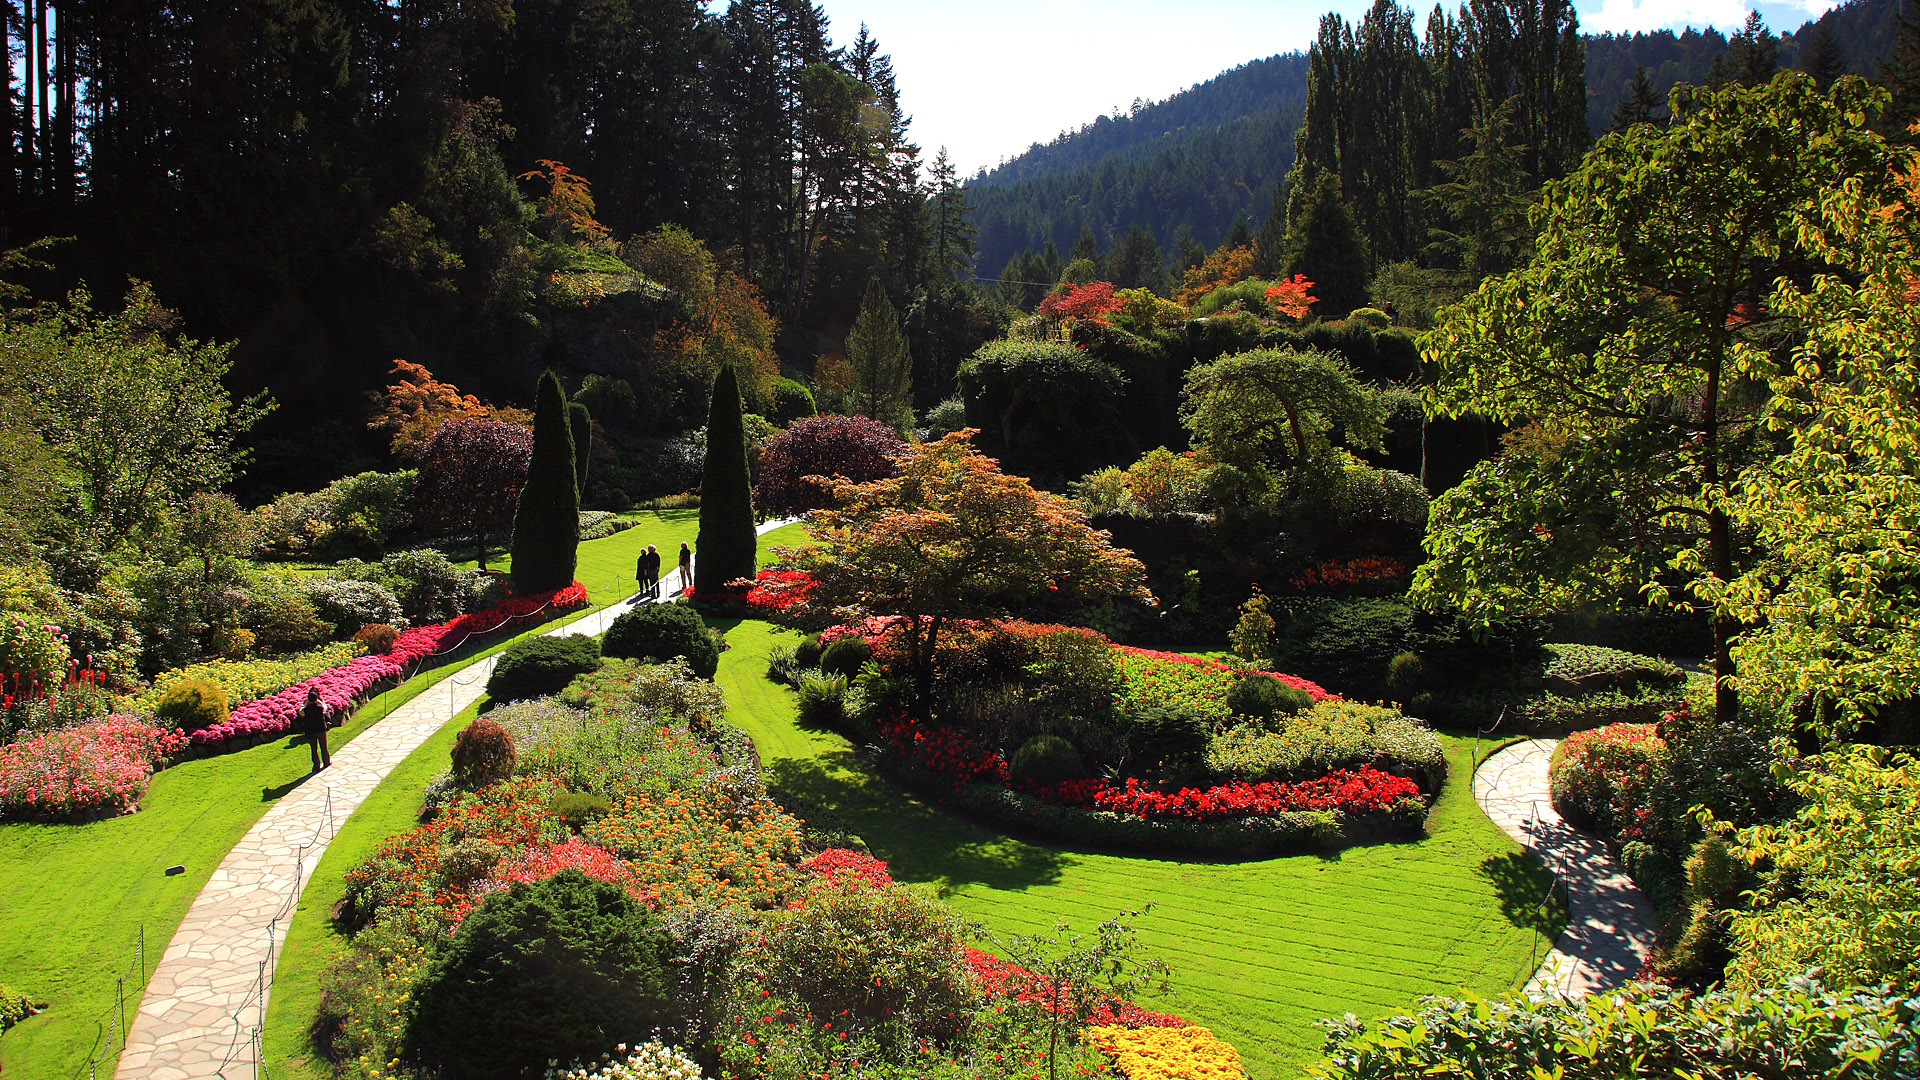 布查徳花园是维多利亚知名的人工花园。玫瑰花园、意大利花园、日式庭院、低洼花园、罗斯喷泉，依次呈现在游客面前。在布查花园不管往哪里一站，怎么拍都似风景明信片般美丽。